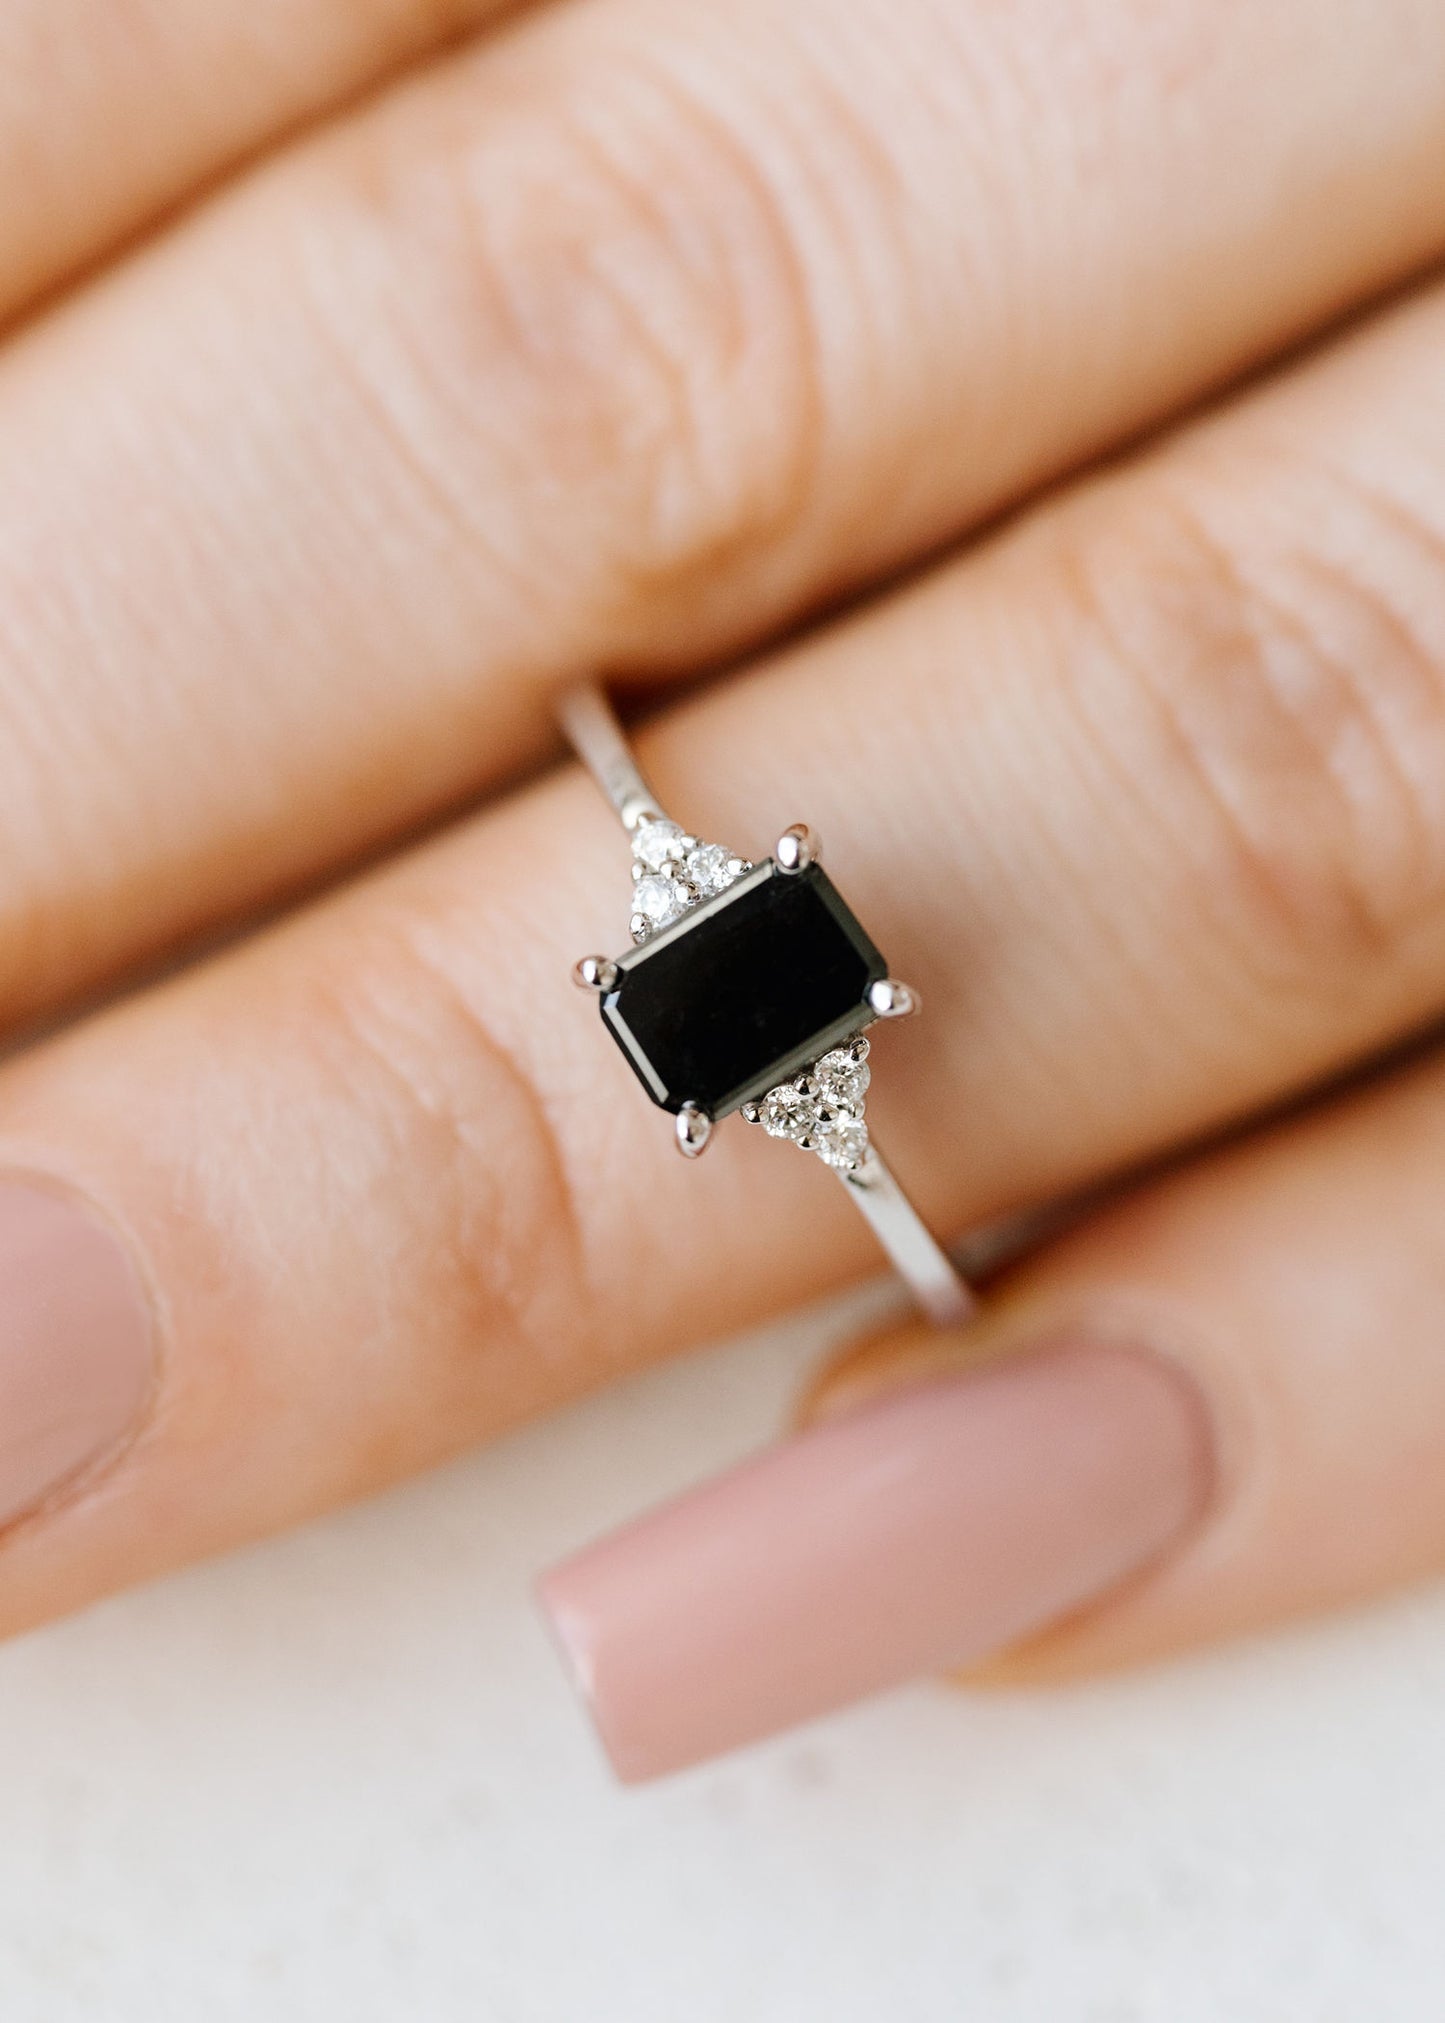 The Calisto Ring | .93ct Black Emerald Cut Diamond | White Gold